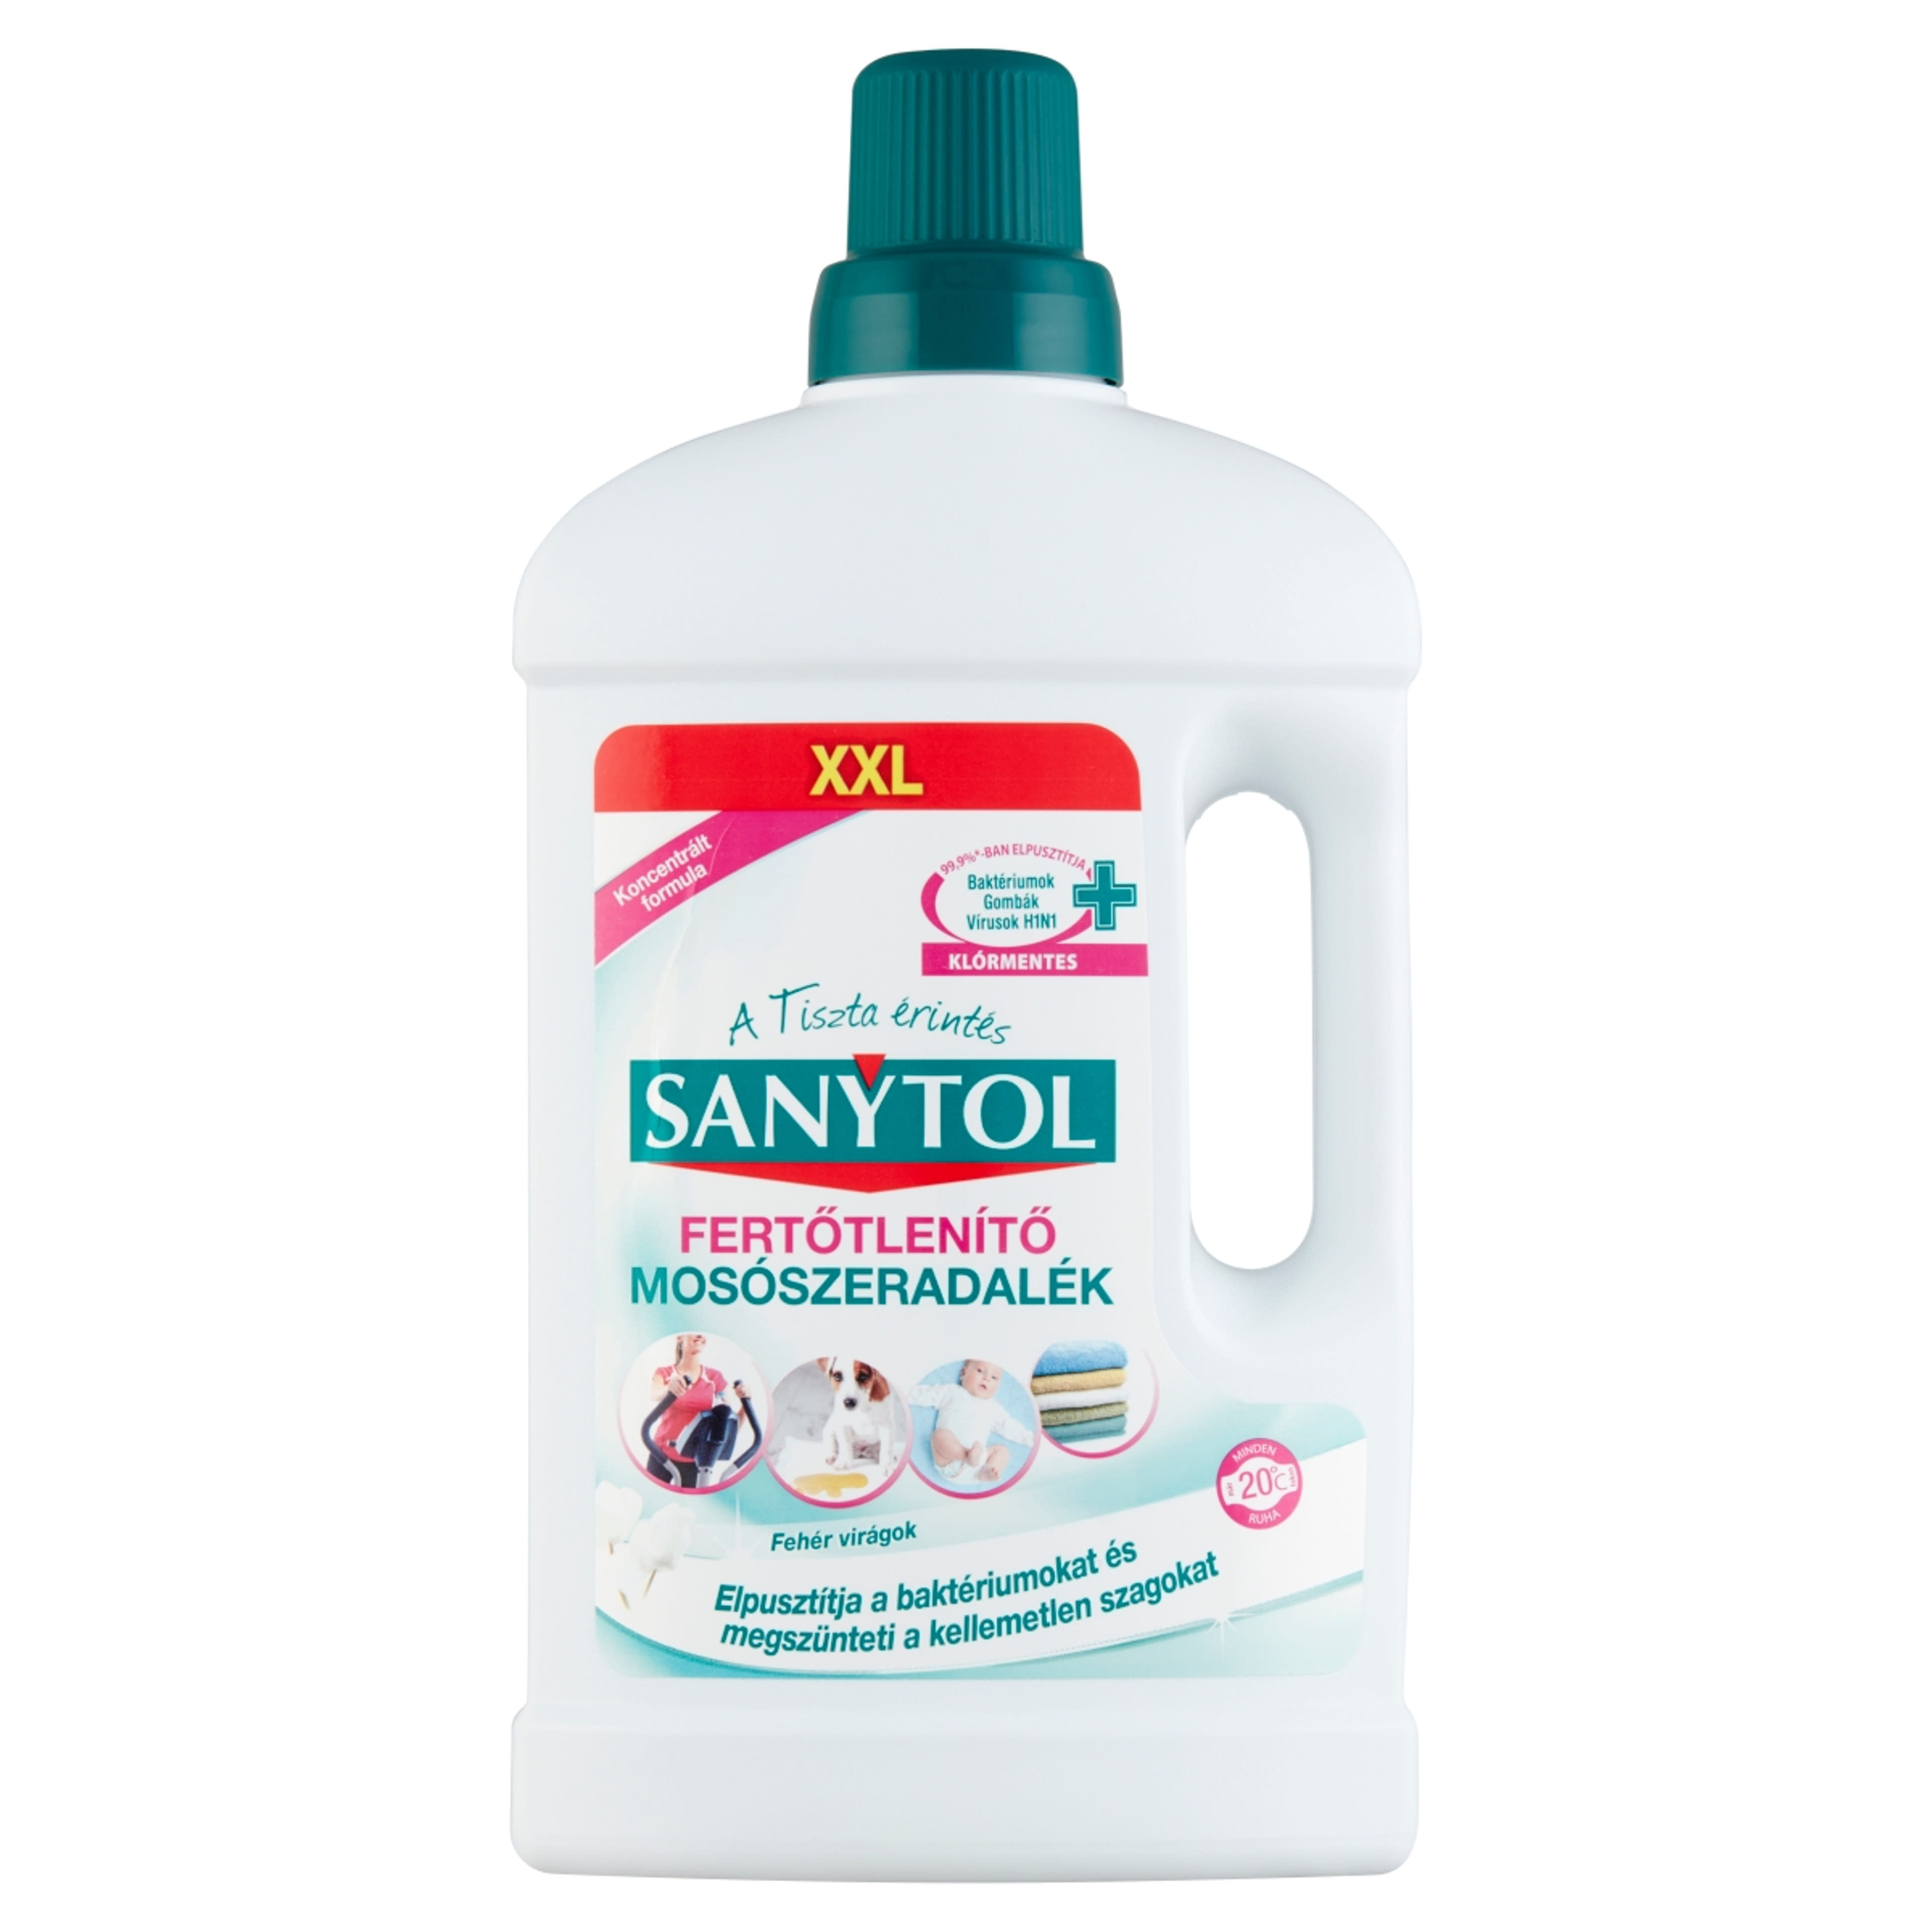 Sanytol fertőtlenítő mosószeradalék - 1 l-1